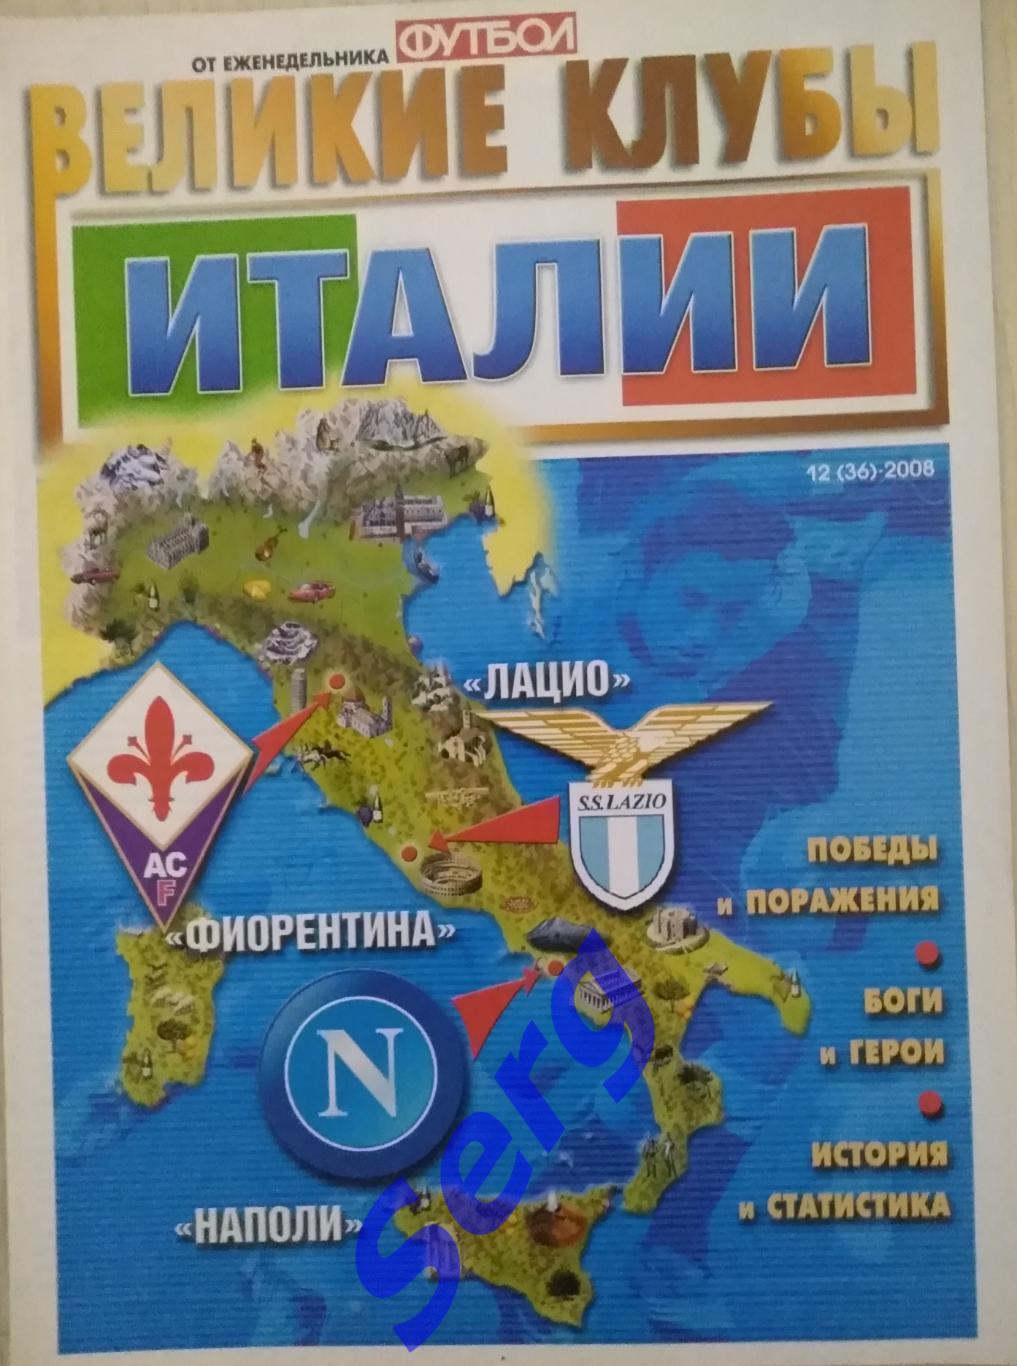 Великие клубы Италии №12 2008 год от еженедельника Футбол